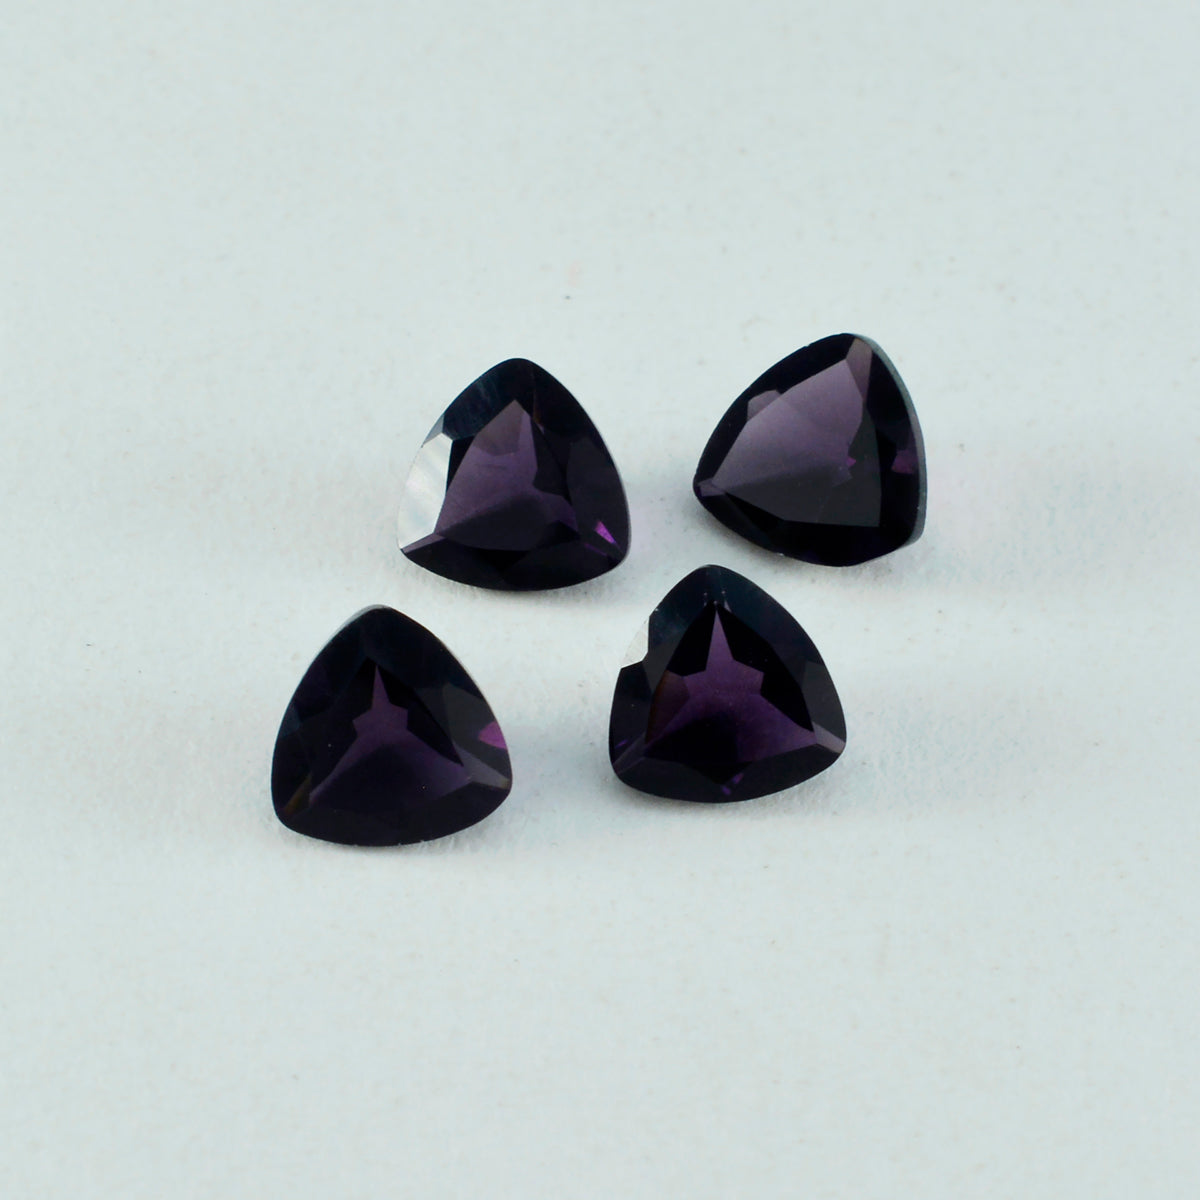 riyogems 1pc パープル アメジスト CZ ファセット 14x14 mm 兆形状の優れた品質のルース宝石